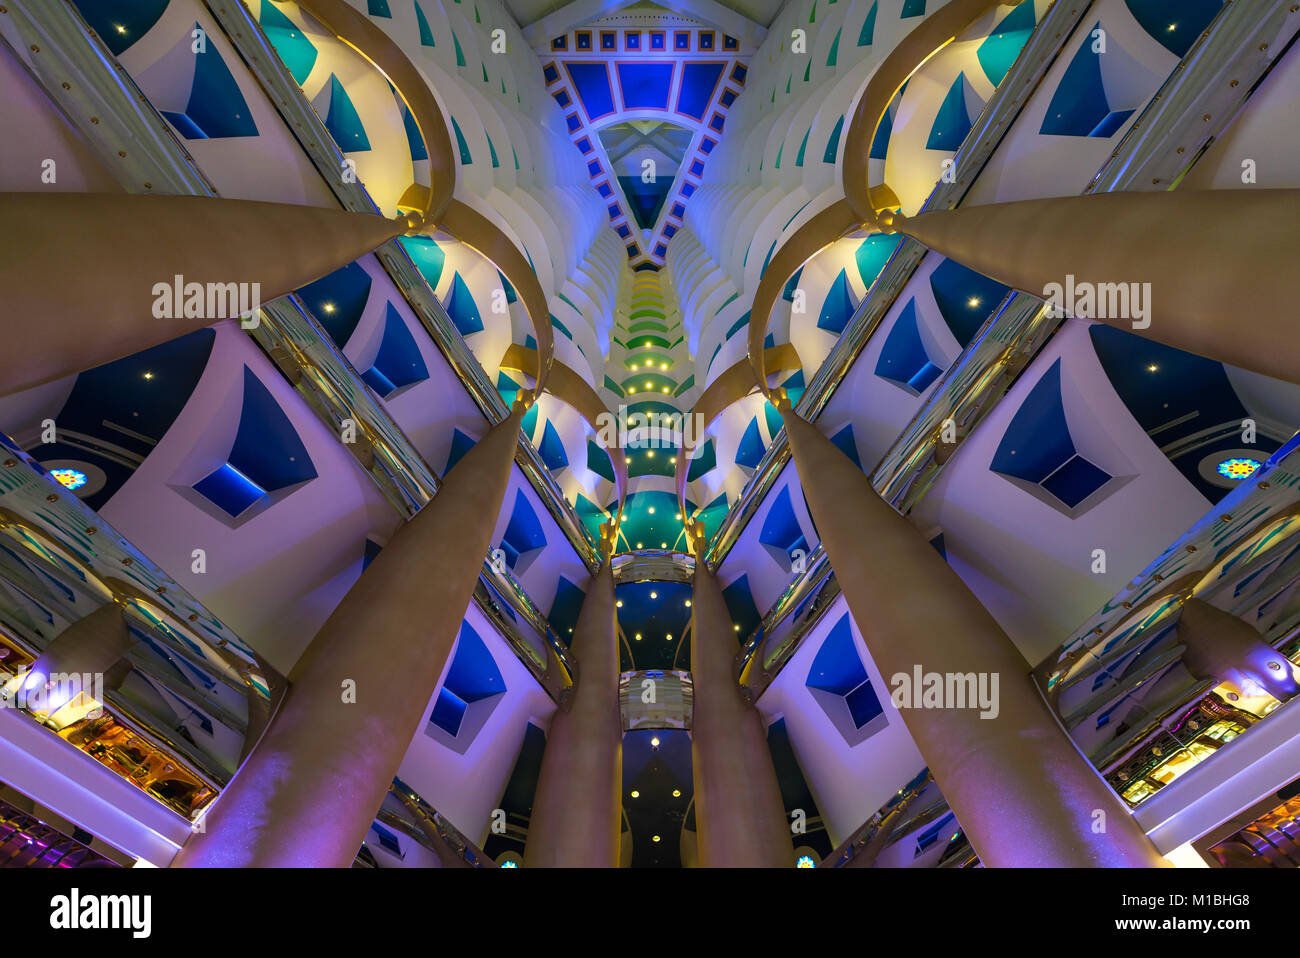 Innenraum des Burj Al Arab, Luxushotel auf einer künstlichen Insel in Dubai, VAE, Vereinigte Arabische Emirate entfernt Stockfoto